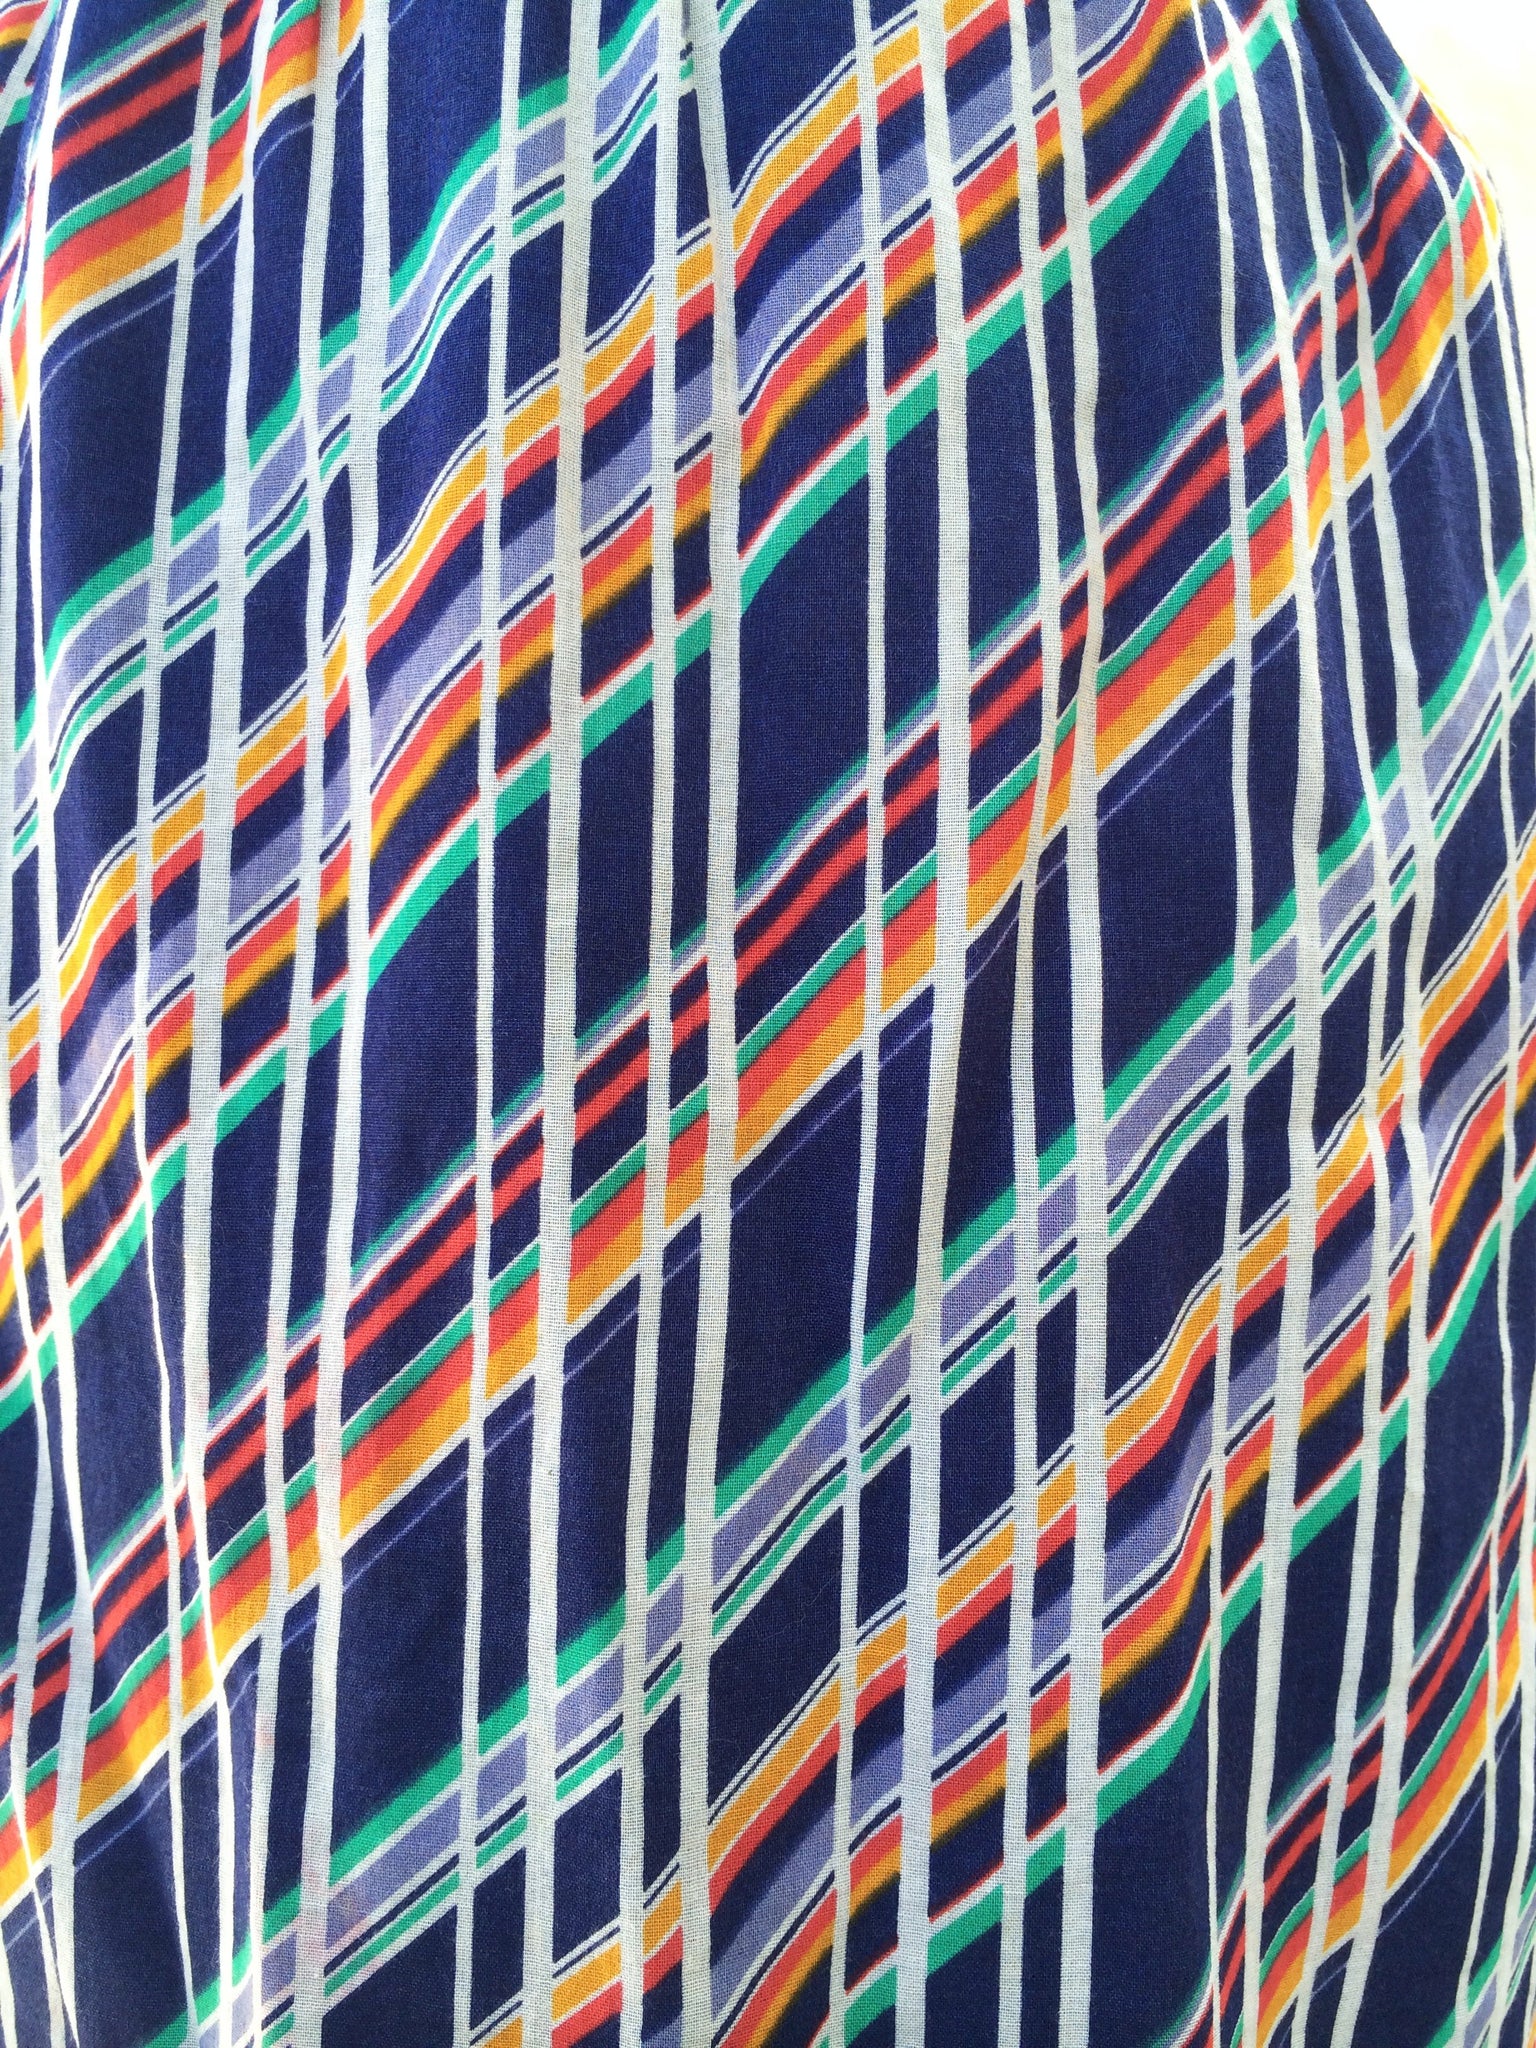 Full Techni-color | Vintage 19790s multi-colored striped dress | Retro Mod Fun!